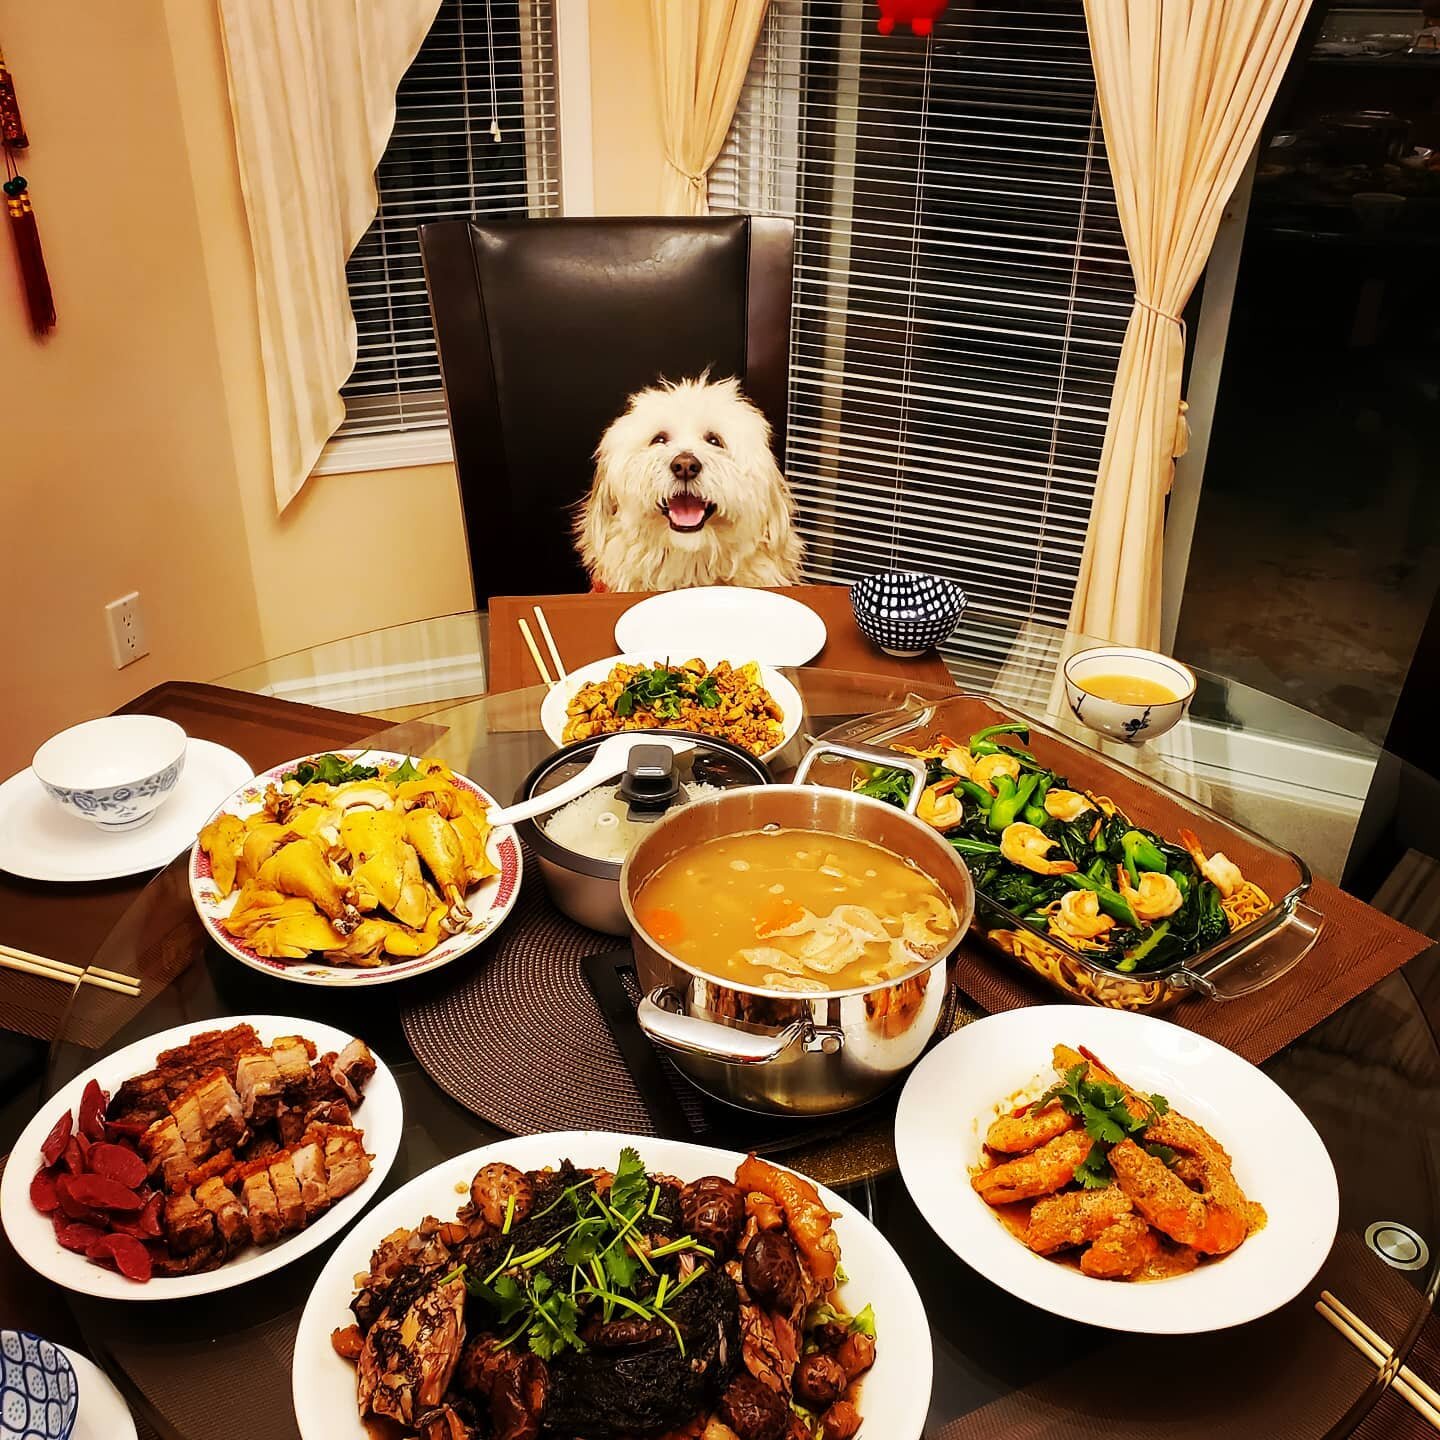 Happy Lunar New Year everyone!

#cny #cny2021 #feast #新年快樂 #lunarnewyear #tet #tết #allforme #foodporn #foodstagram #feedme #mealforone #lhasaapsosofinstagram #lhasaapsoworld #lhasaapso #puppylove #puppiesofinstagram #dogstagram #dogsofinstagram #dog